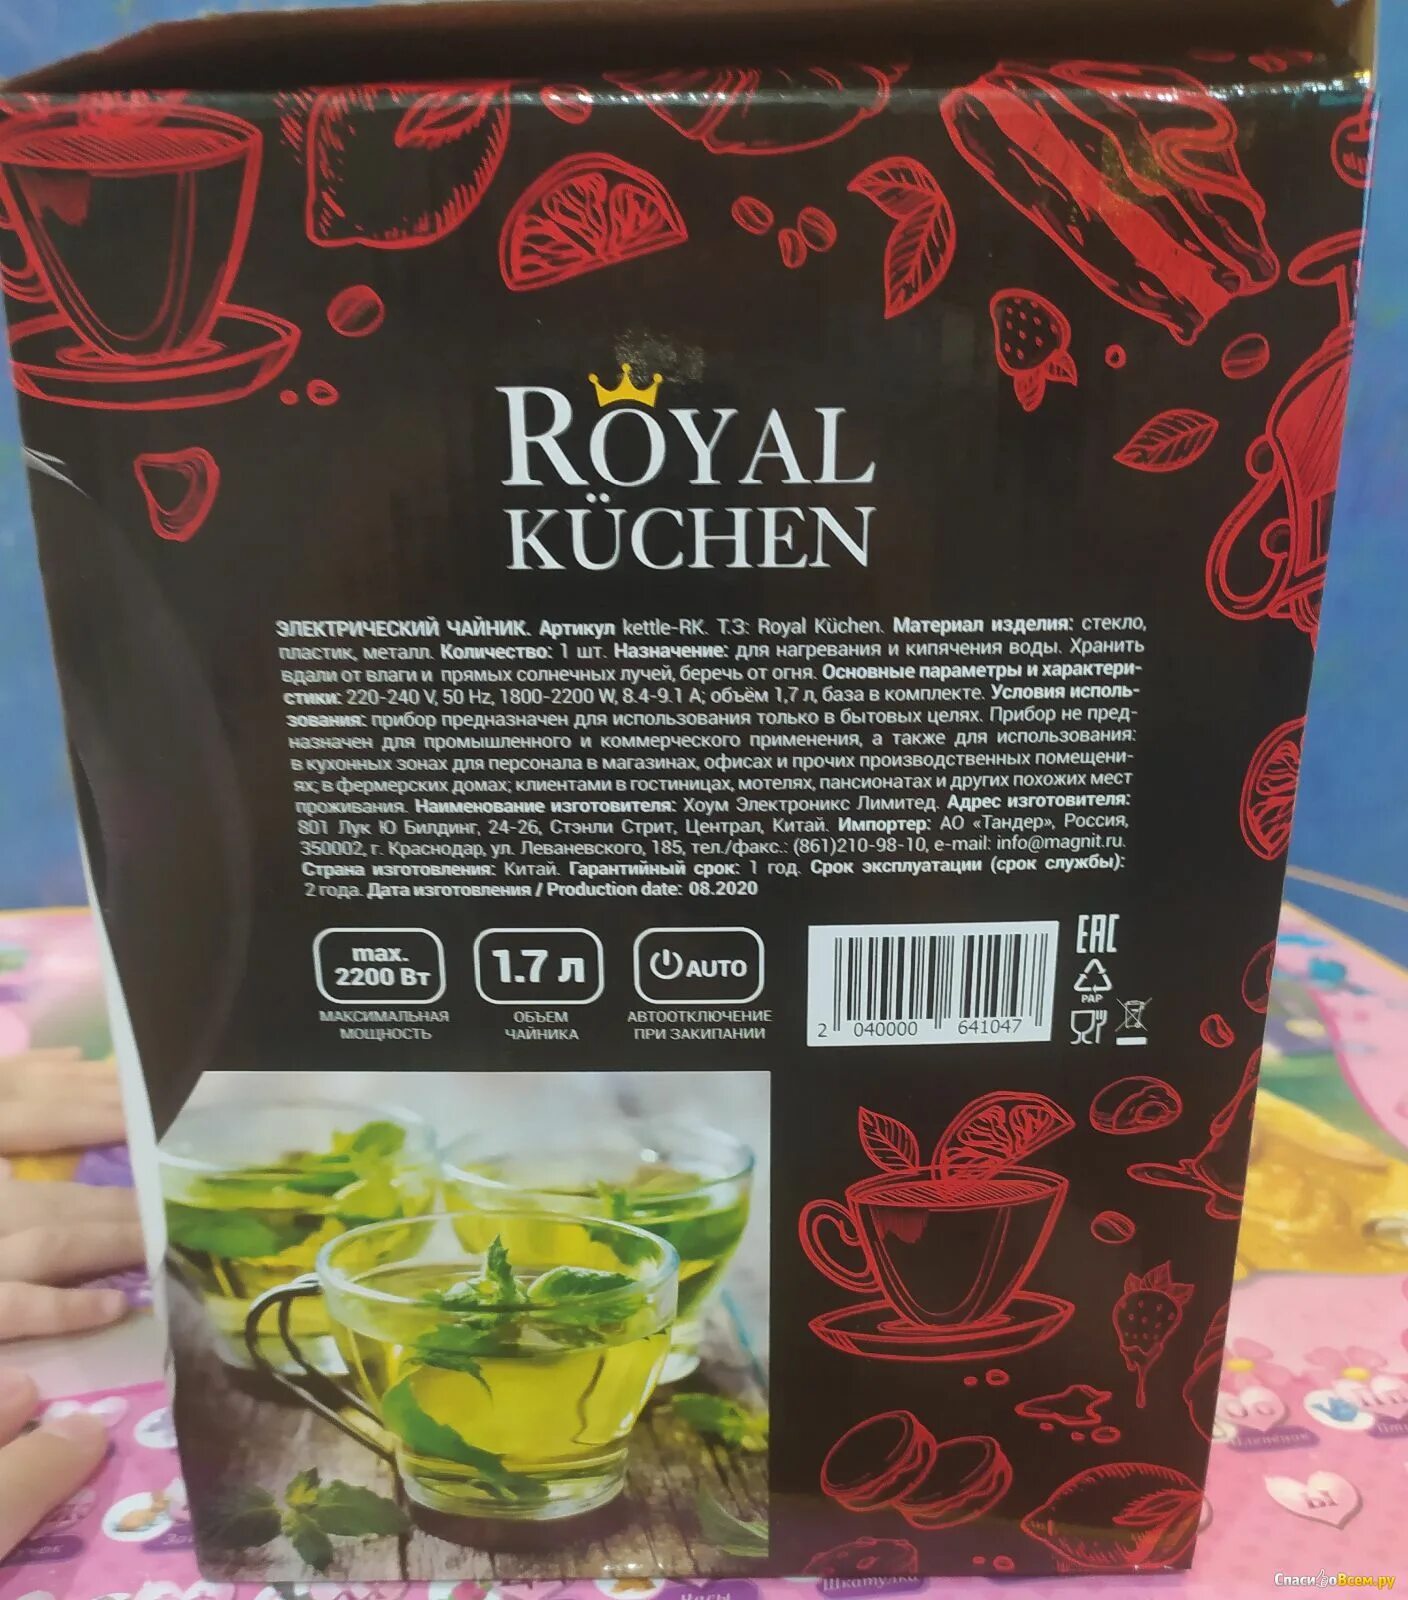 Роял кюхен отзывы. Чайник Royal Kuchen. Фирма Royal Kuchen. Контейнер Royal Kuchen. Фирма Роял Кюхен чайник.